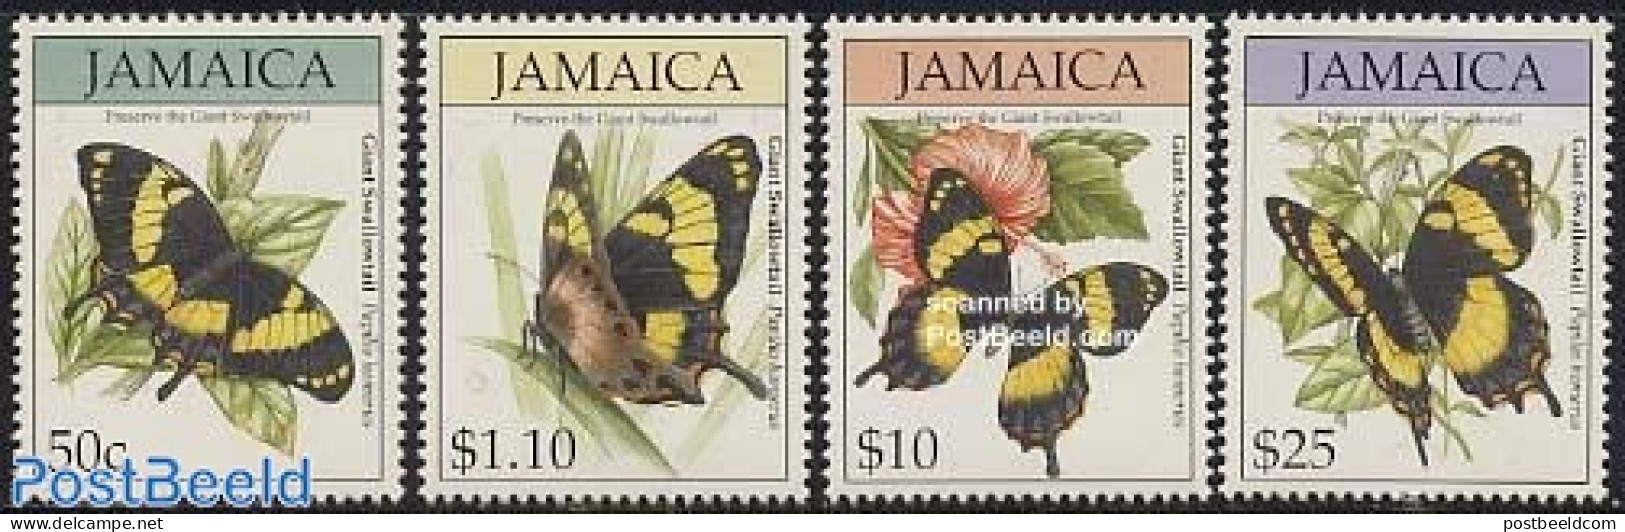 Jamaica 1994 Butterflies 4v, Mint NH, Nature - Butterflies - Jamaica (1962-...)